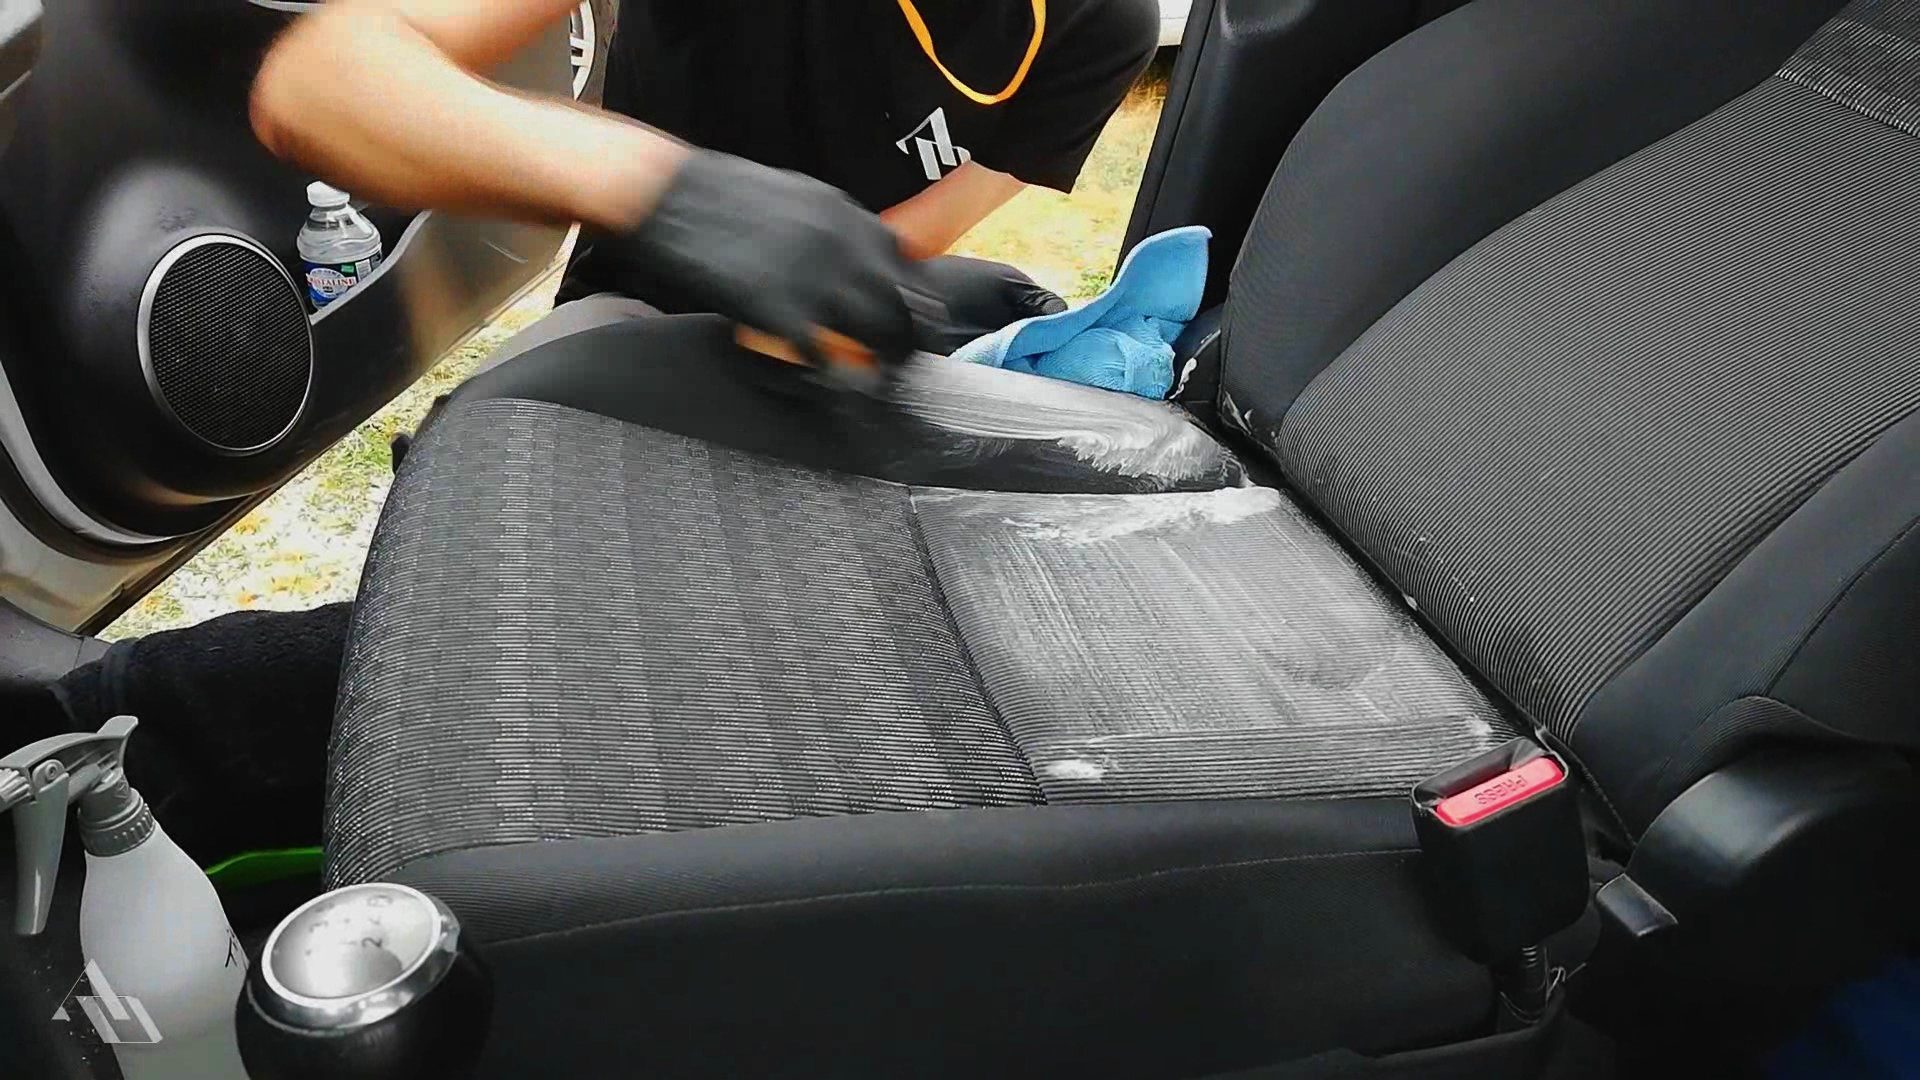 Comment nettoyer les tissus de voiture ?